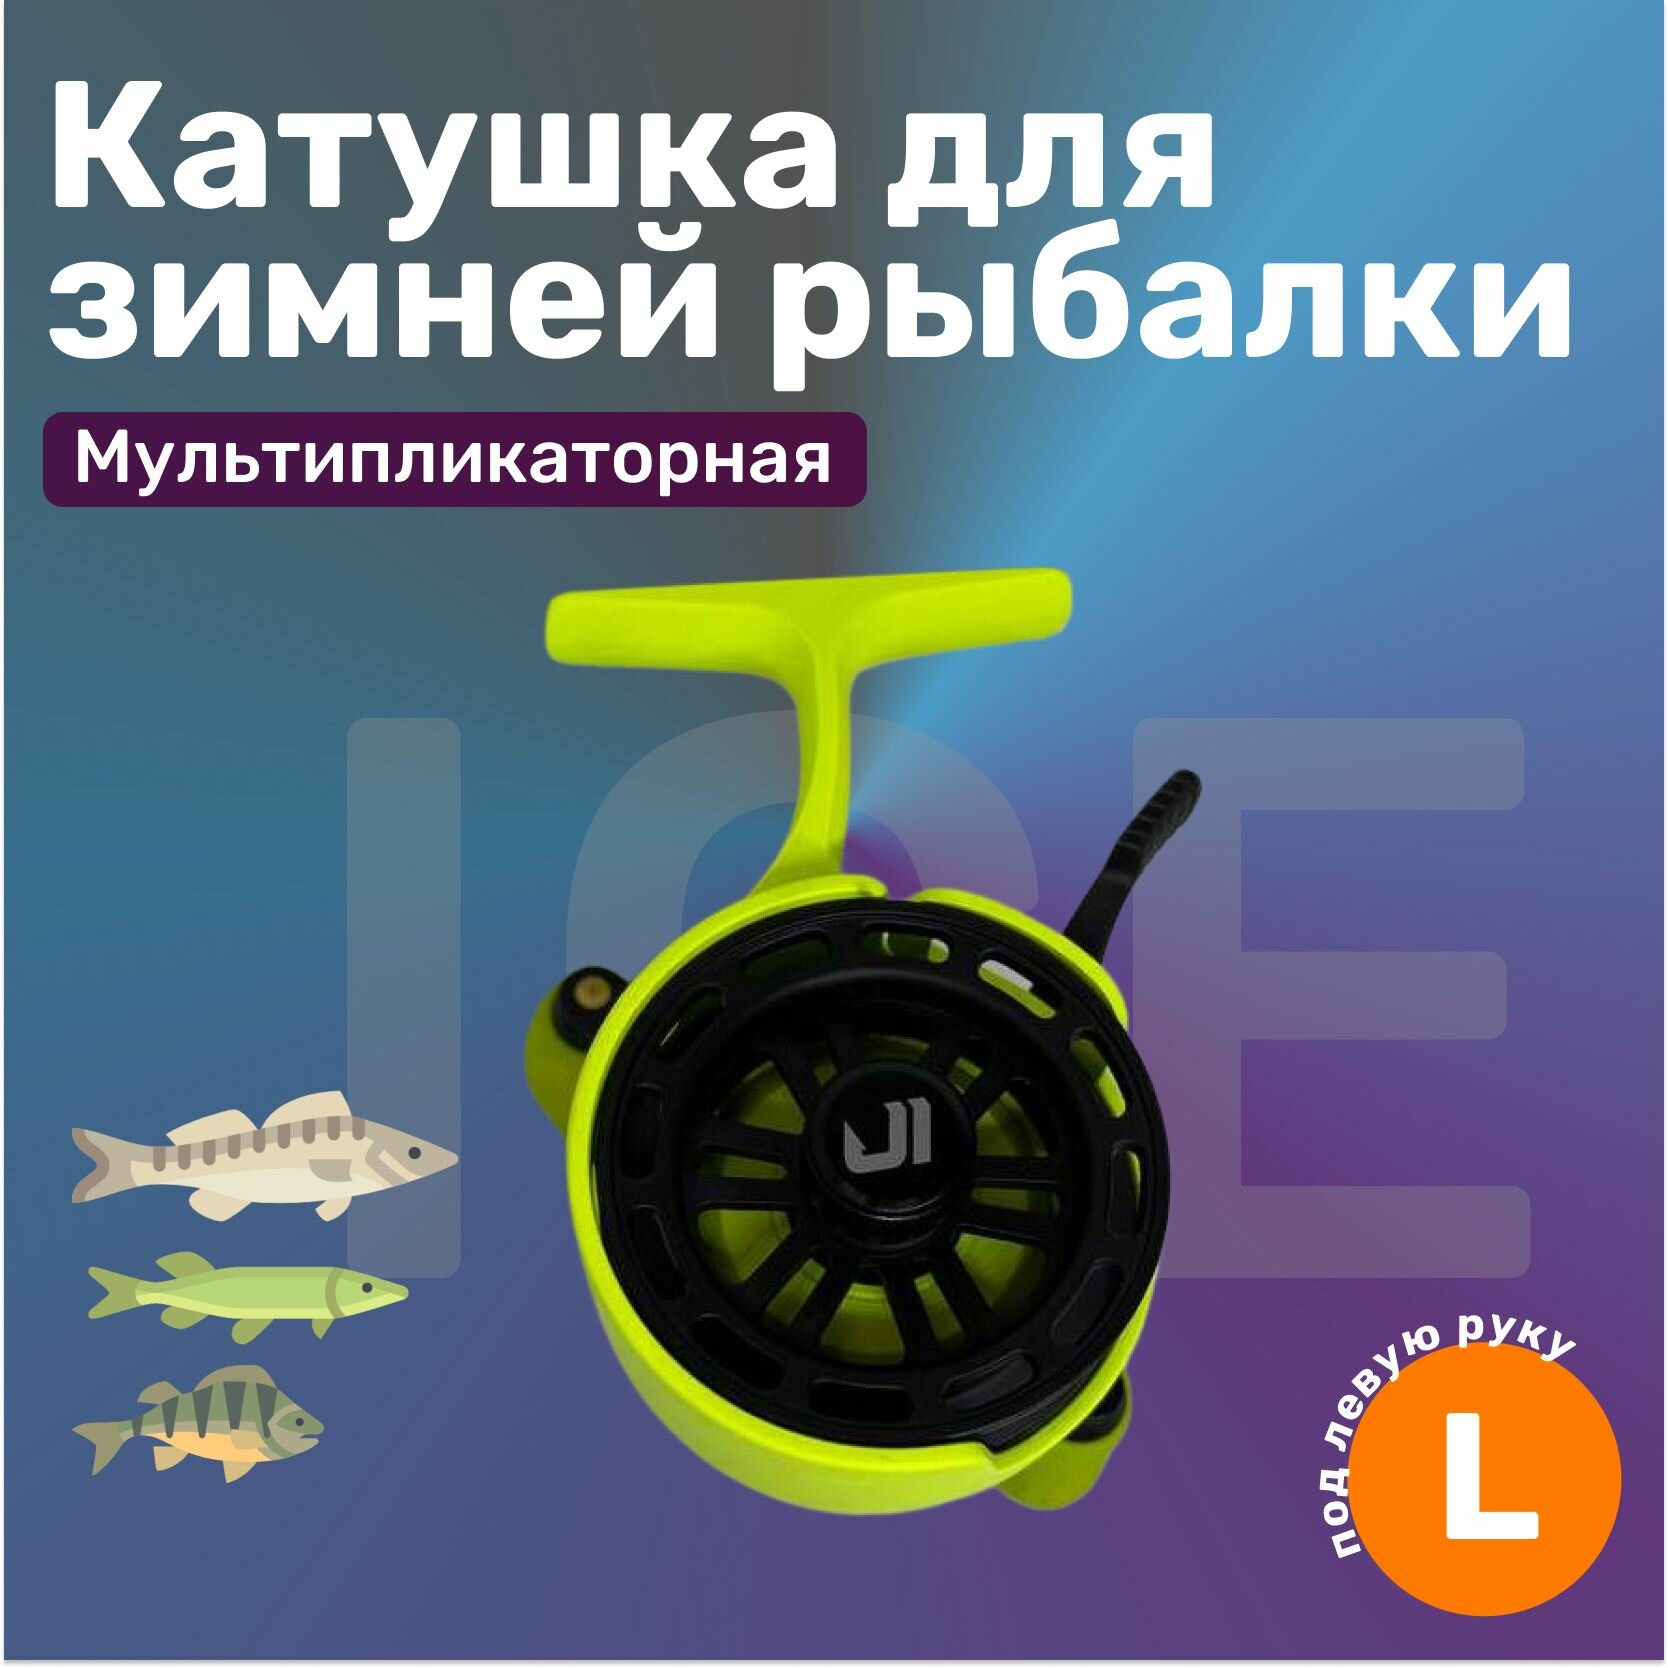 Катушка Jig It Team Dubna Vib Special Lime под левую руку зеленая / для зимней рыбалки мультипликаторная / для ловли хищной рыбы